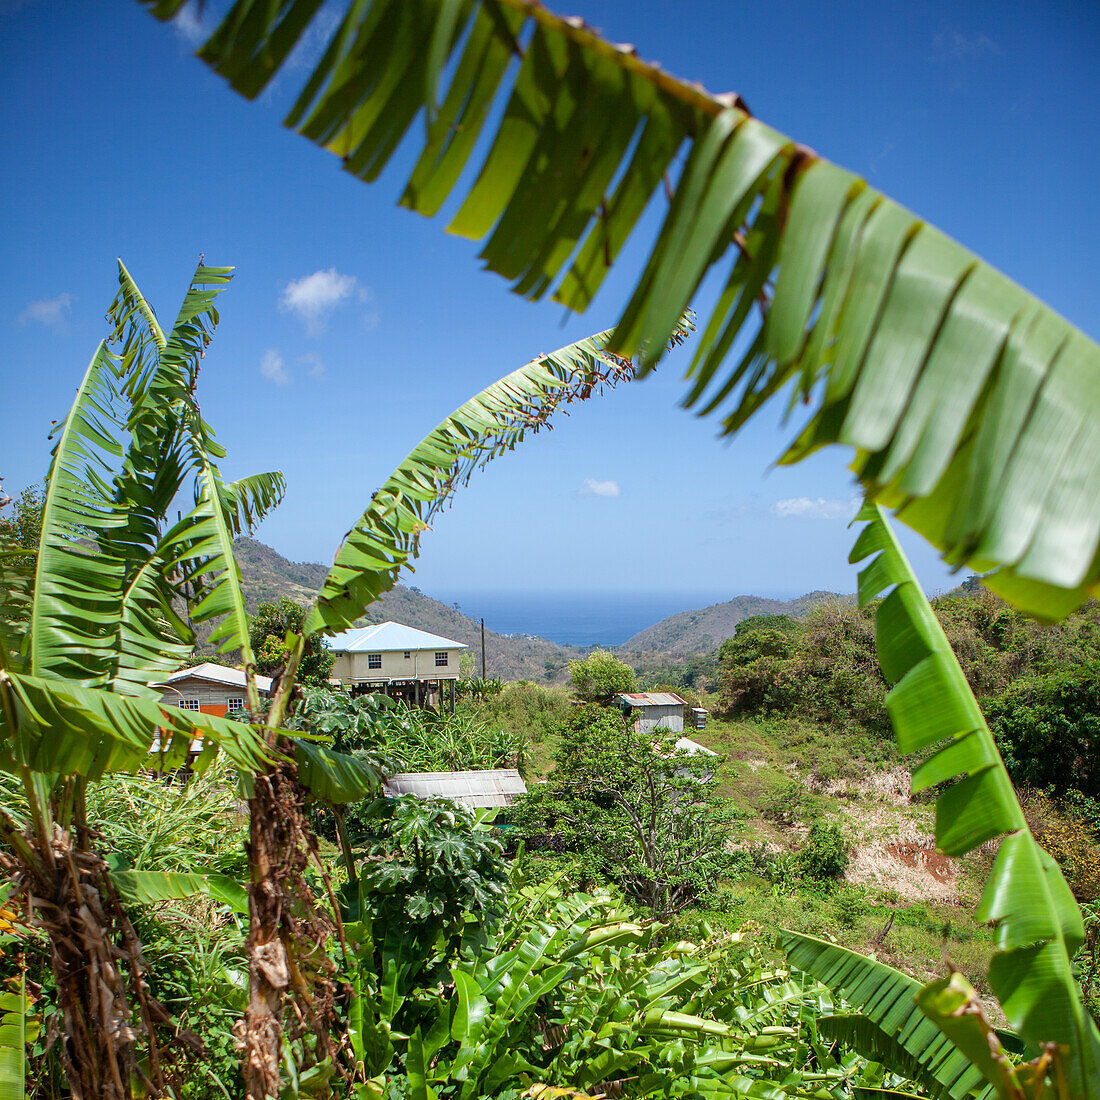  Landscape in Grenada, Caribbean 